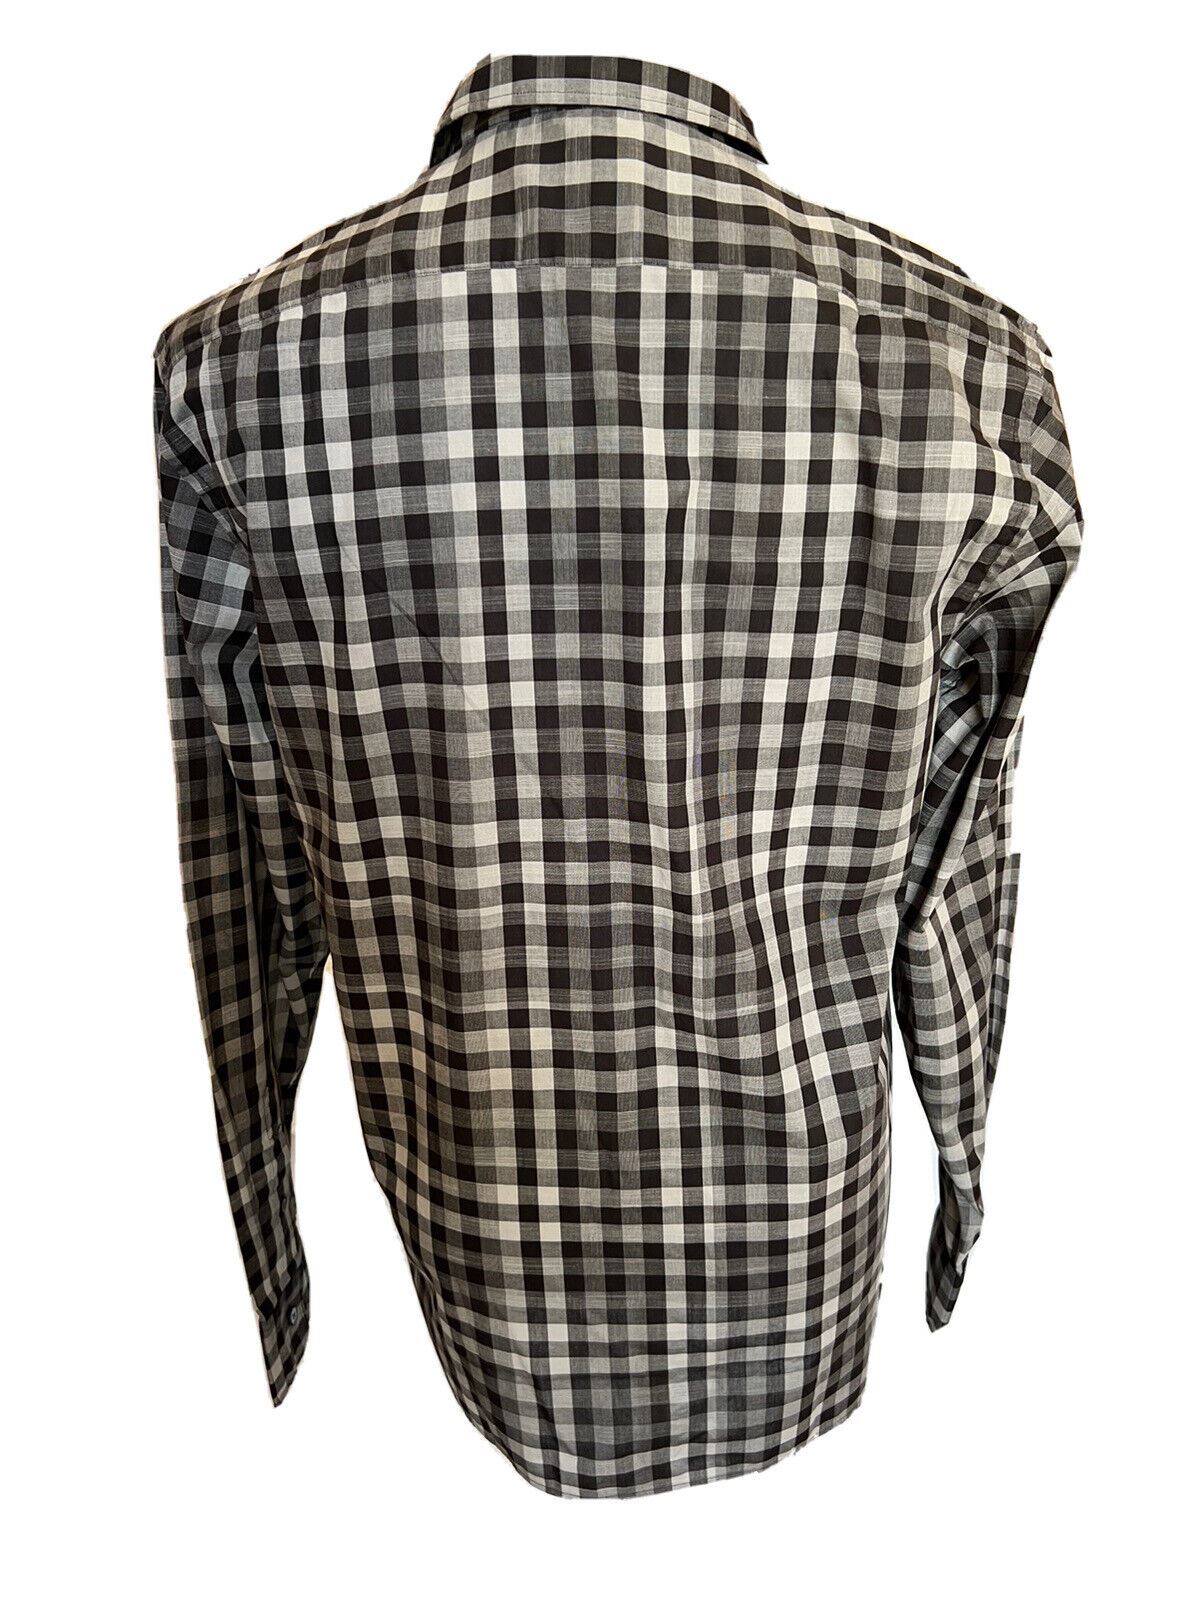 Мужская черная хлопковая рубашка на пуговицах Burberry стоимостью 250 долларов NWT, средняя 4015368